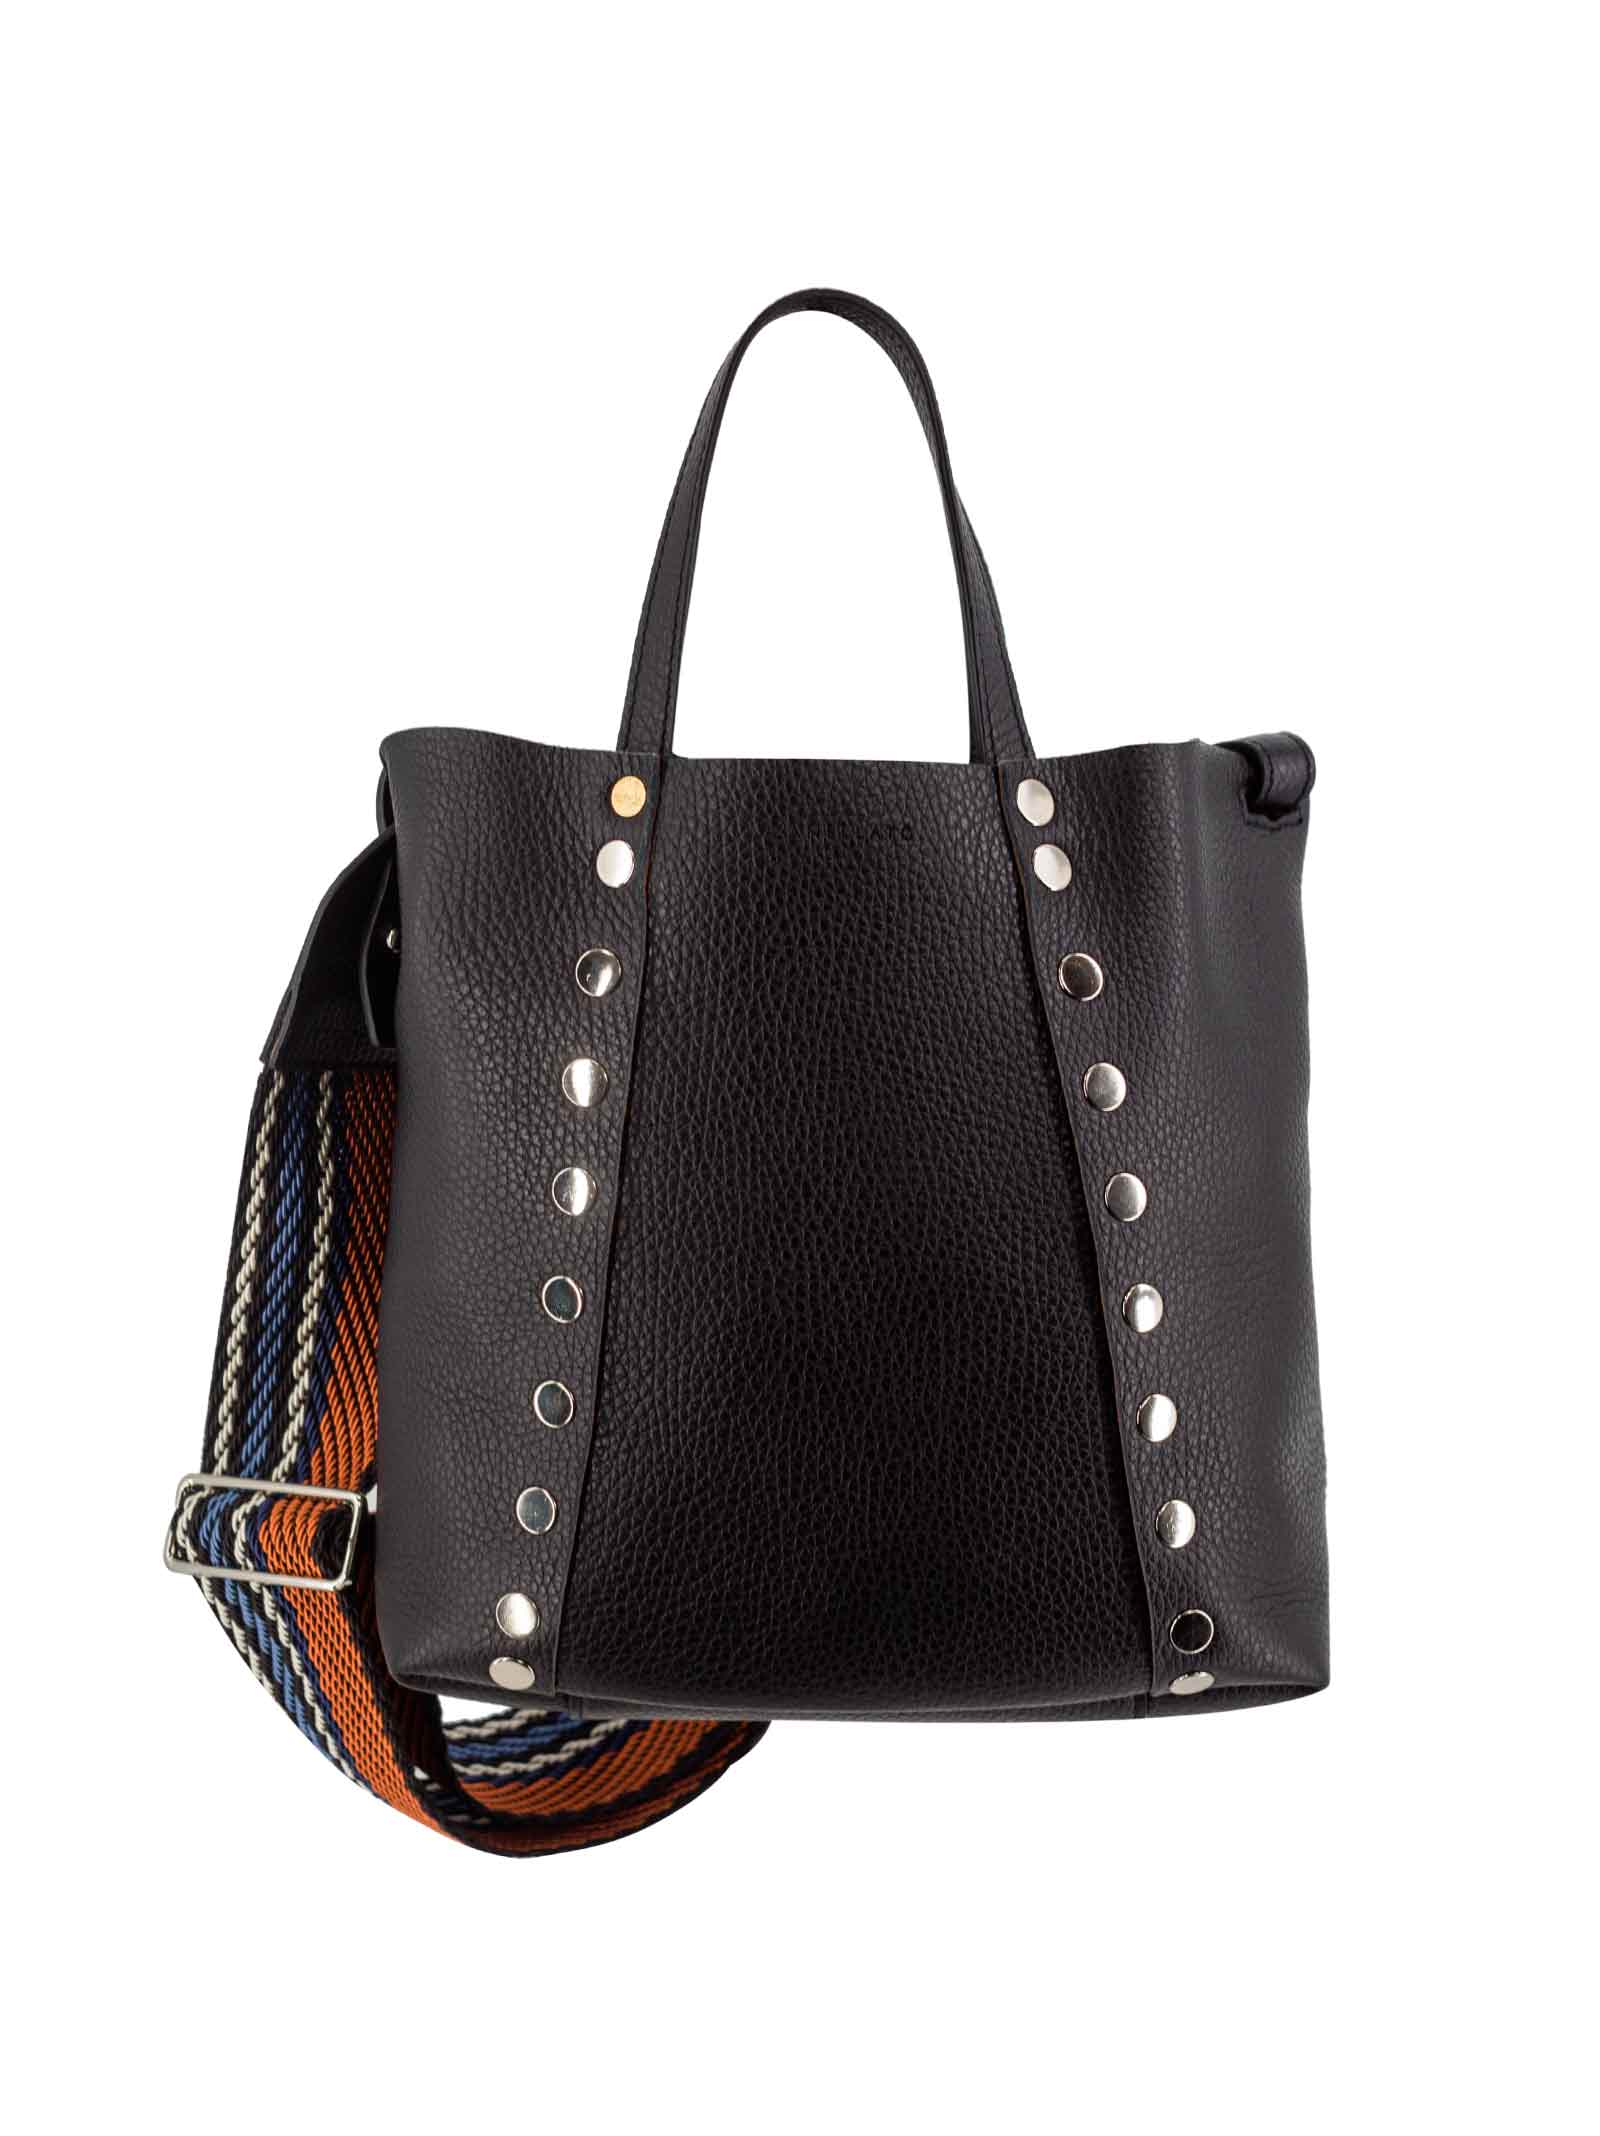 Zanellato Studded Leather Tote Bag